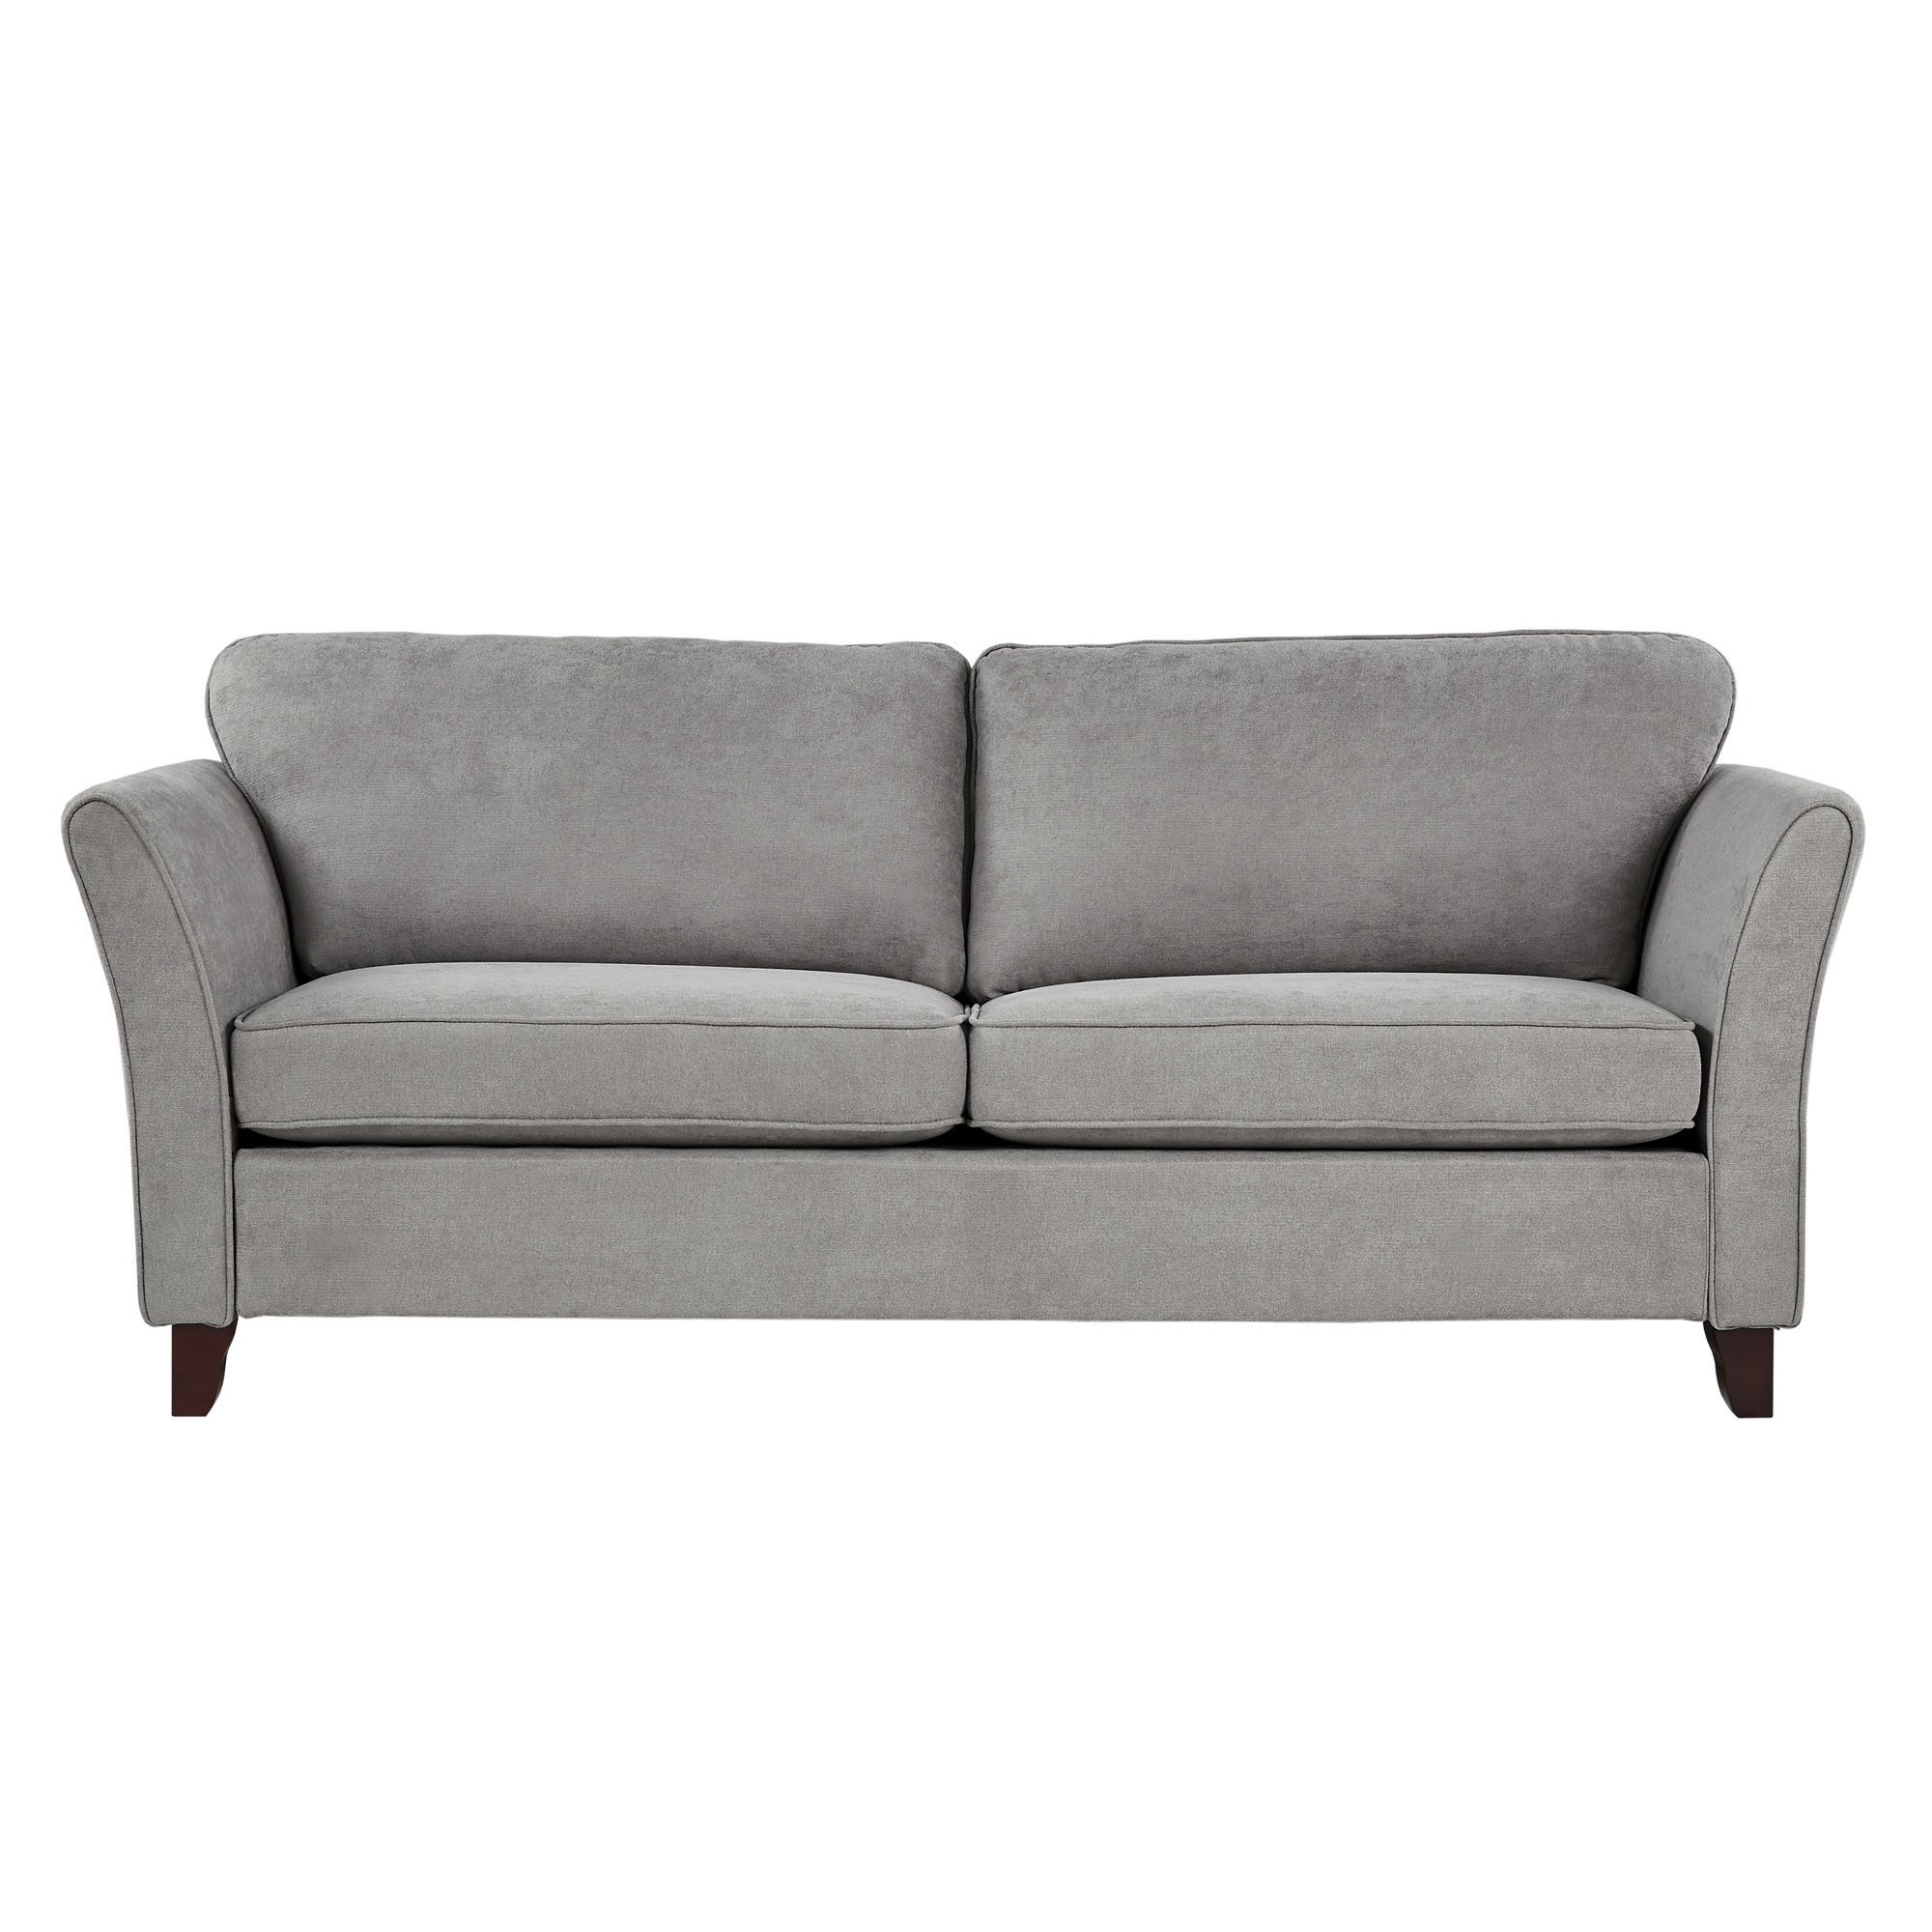 No Sofa L Kingbird Furniture Company 7